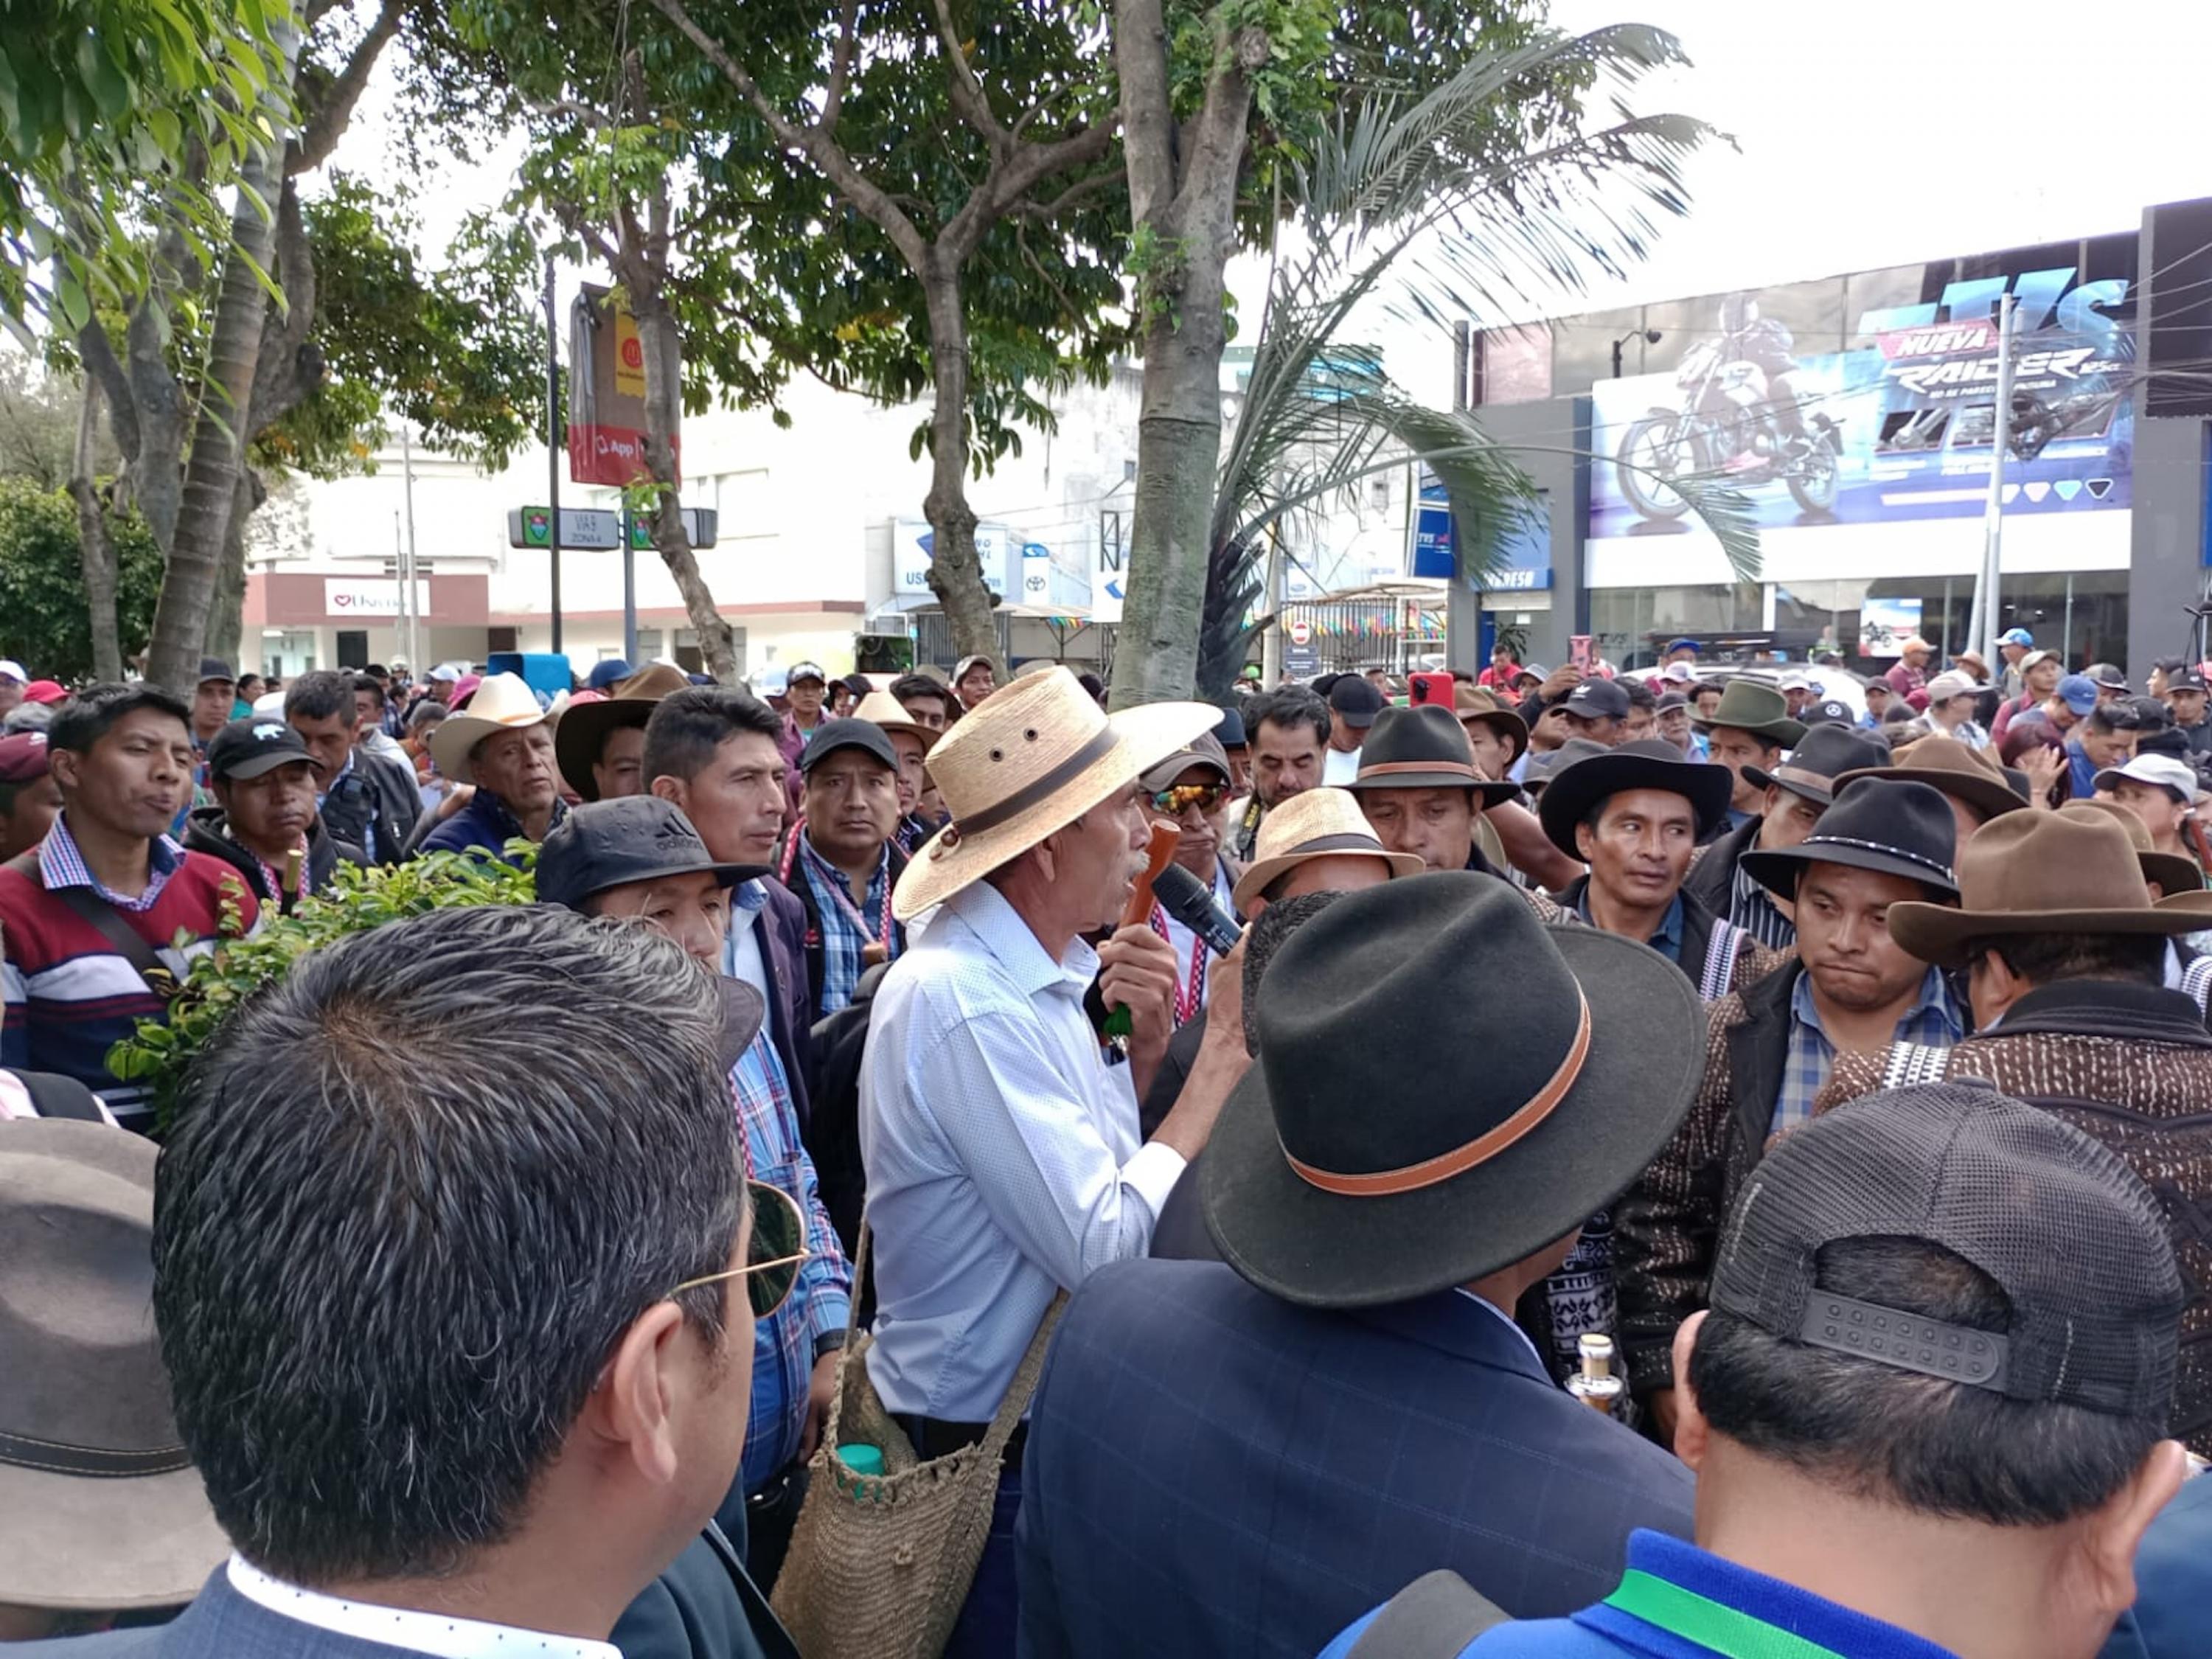 Miembros del Parlamento Xinka llegaron a Ciudad de Guatemala el 18 de septiembre en medio de una sostenida interferencia judicial en el proceso electoral. “Los #PueblosOriginarios nos organizamos en contra del intento del #GolpeDeEstado y exigimos la renuncia de #ConsueloPorras, #RafaelCurruchiche, #CintiaMonterroso y #FredyOrellana”, escribió el Parlamento en su cuenta de Twitter.